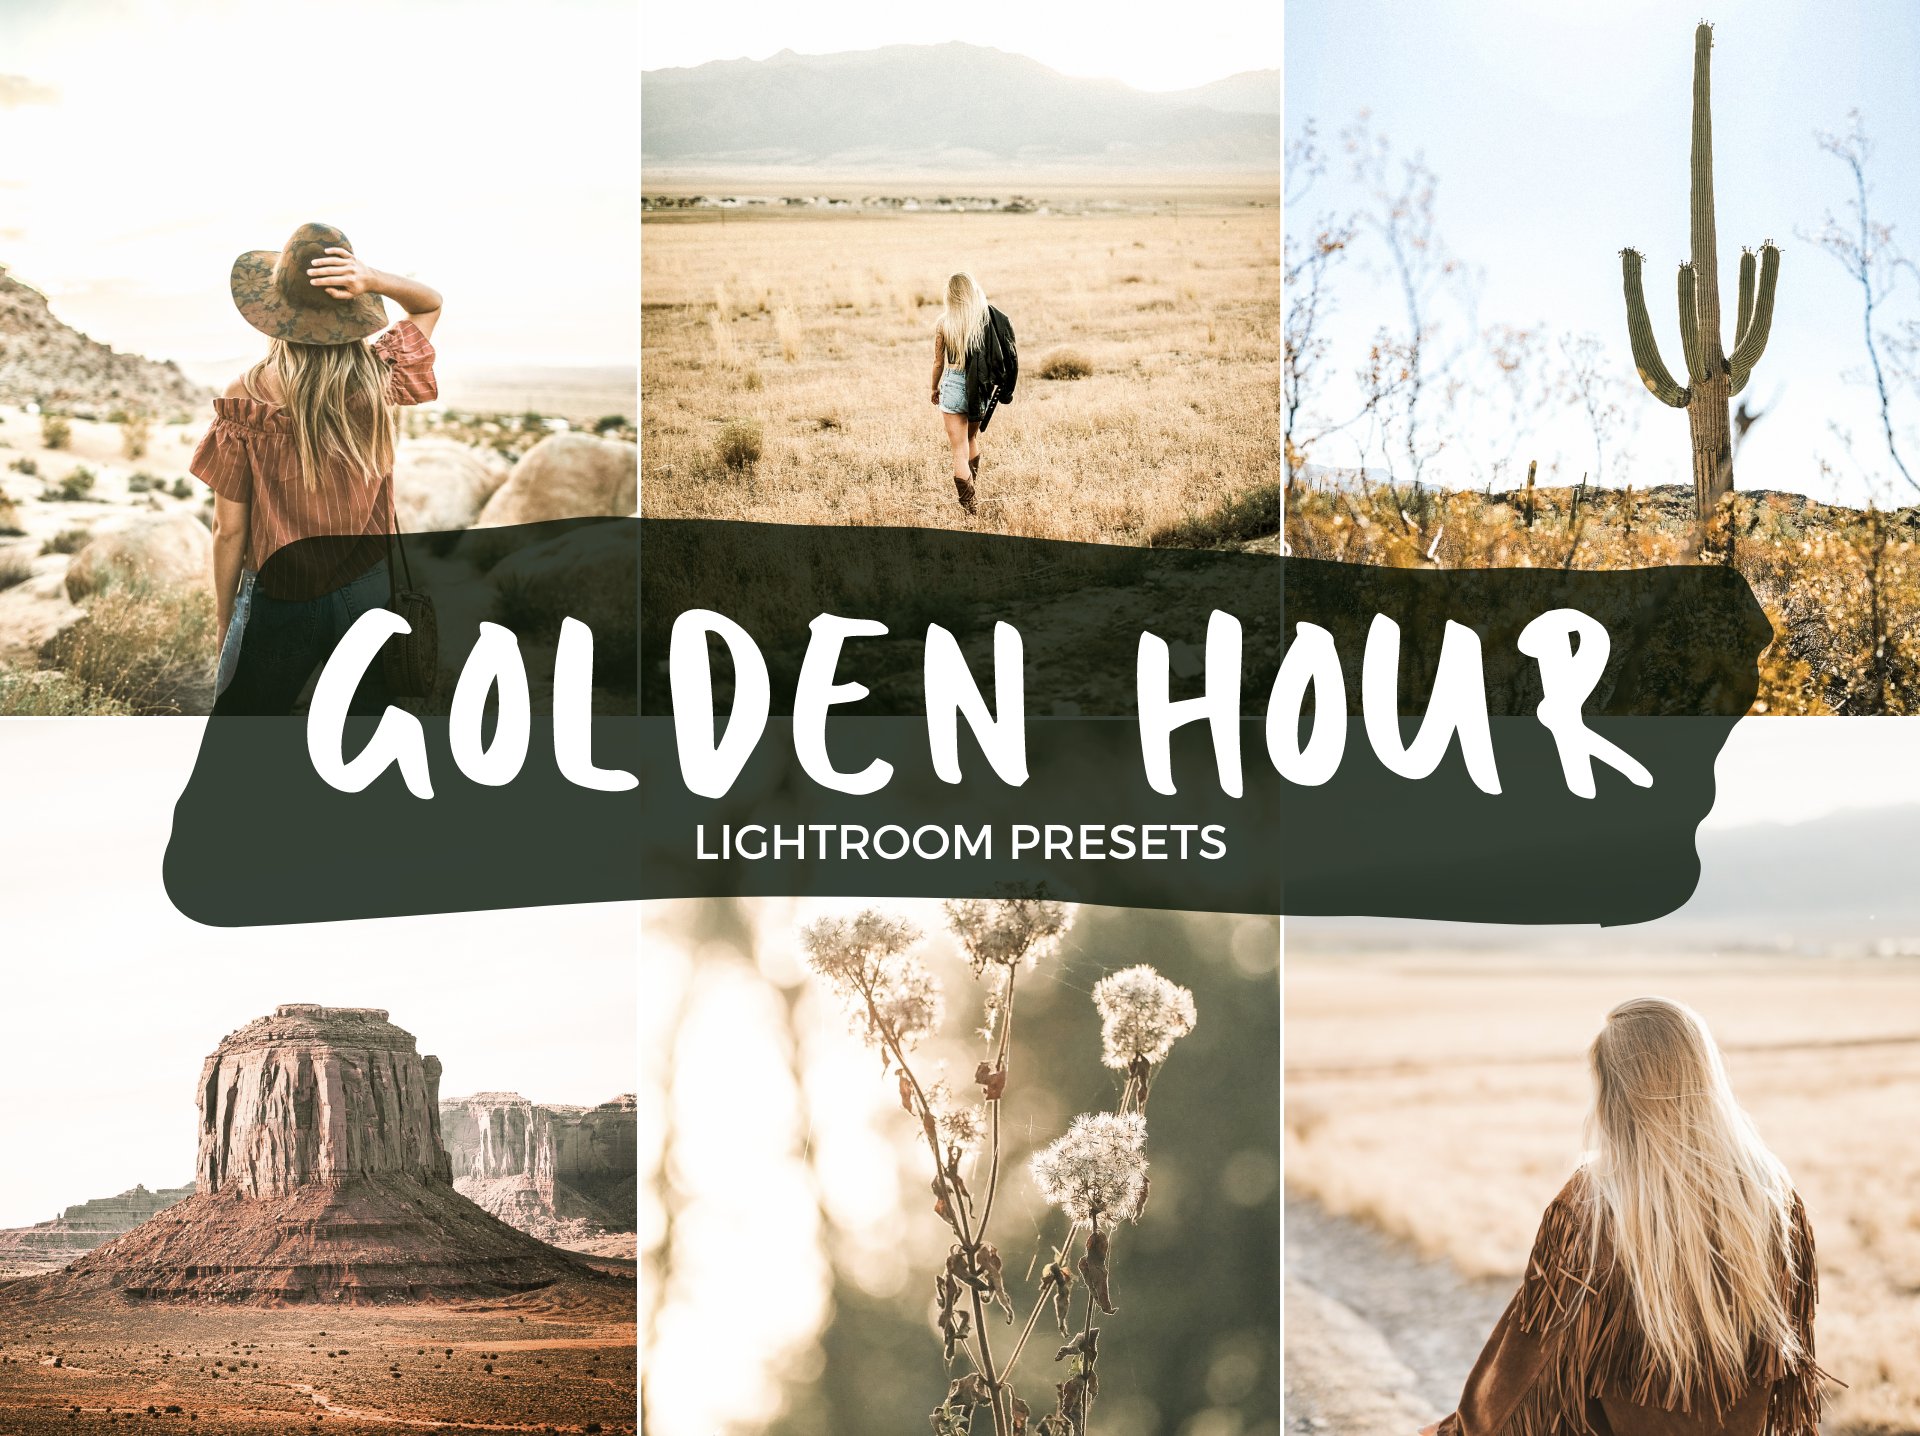 8 Lightroom Presets - Golden Hourcover image.